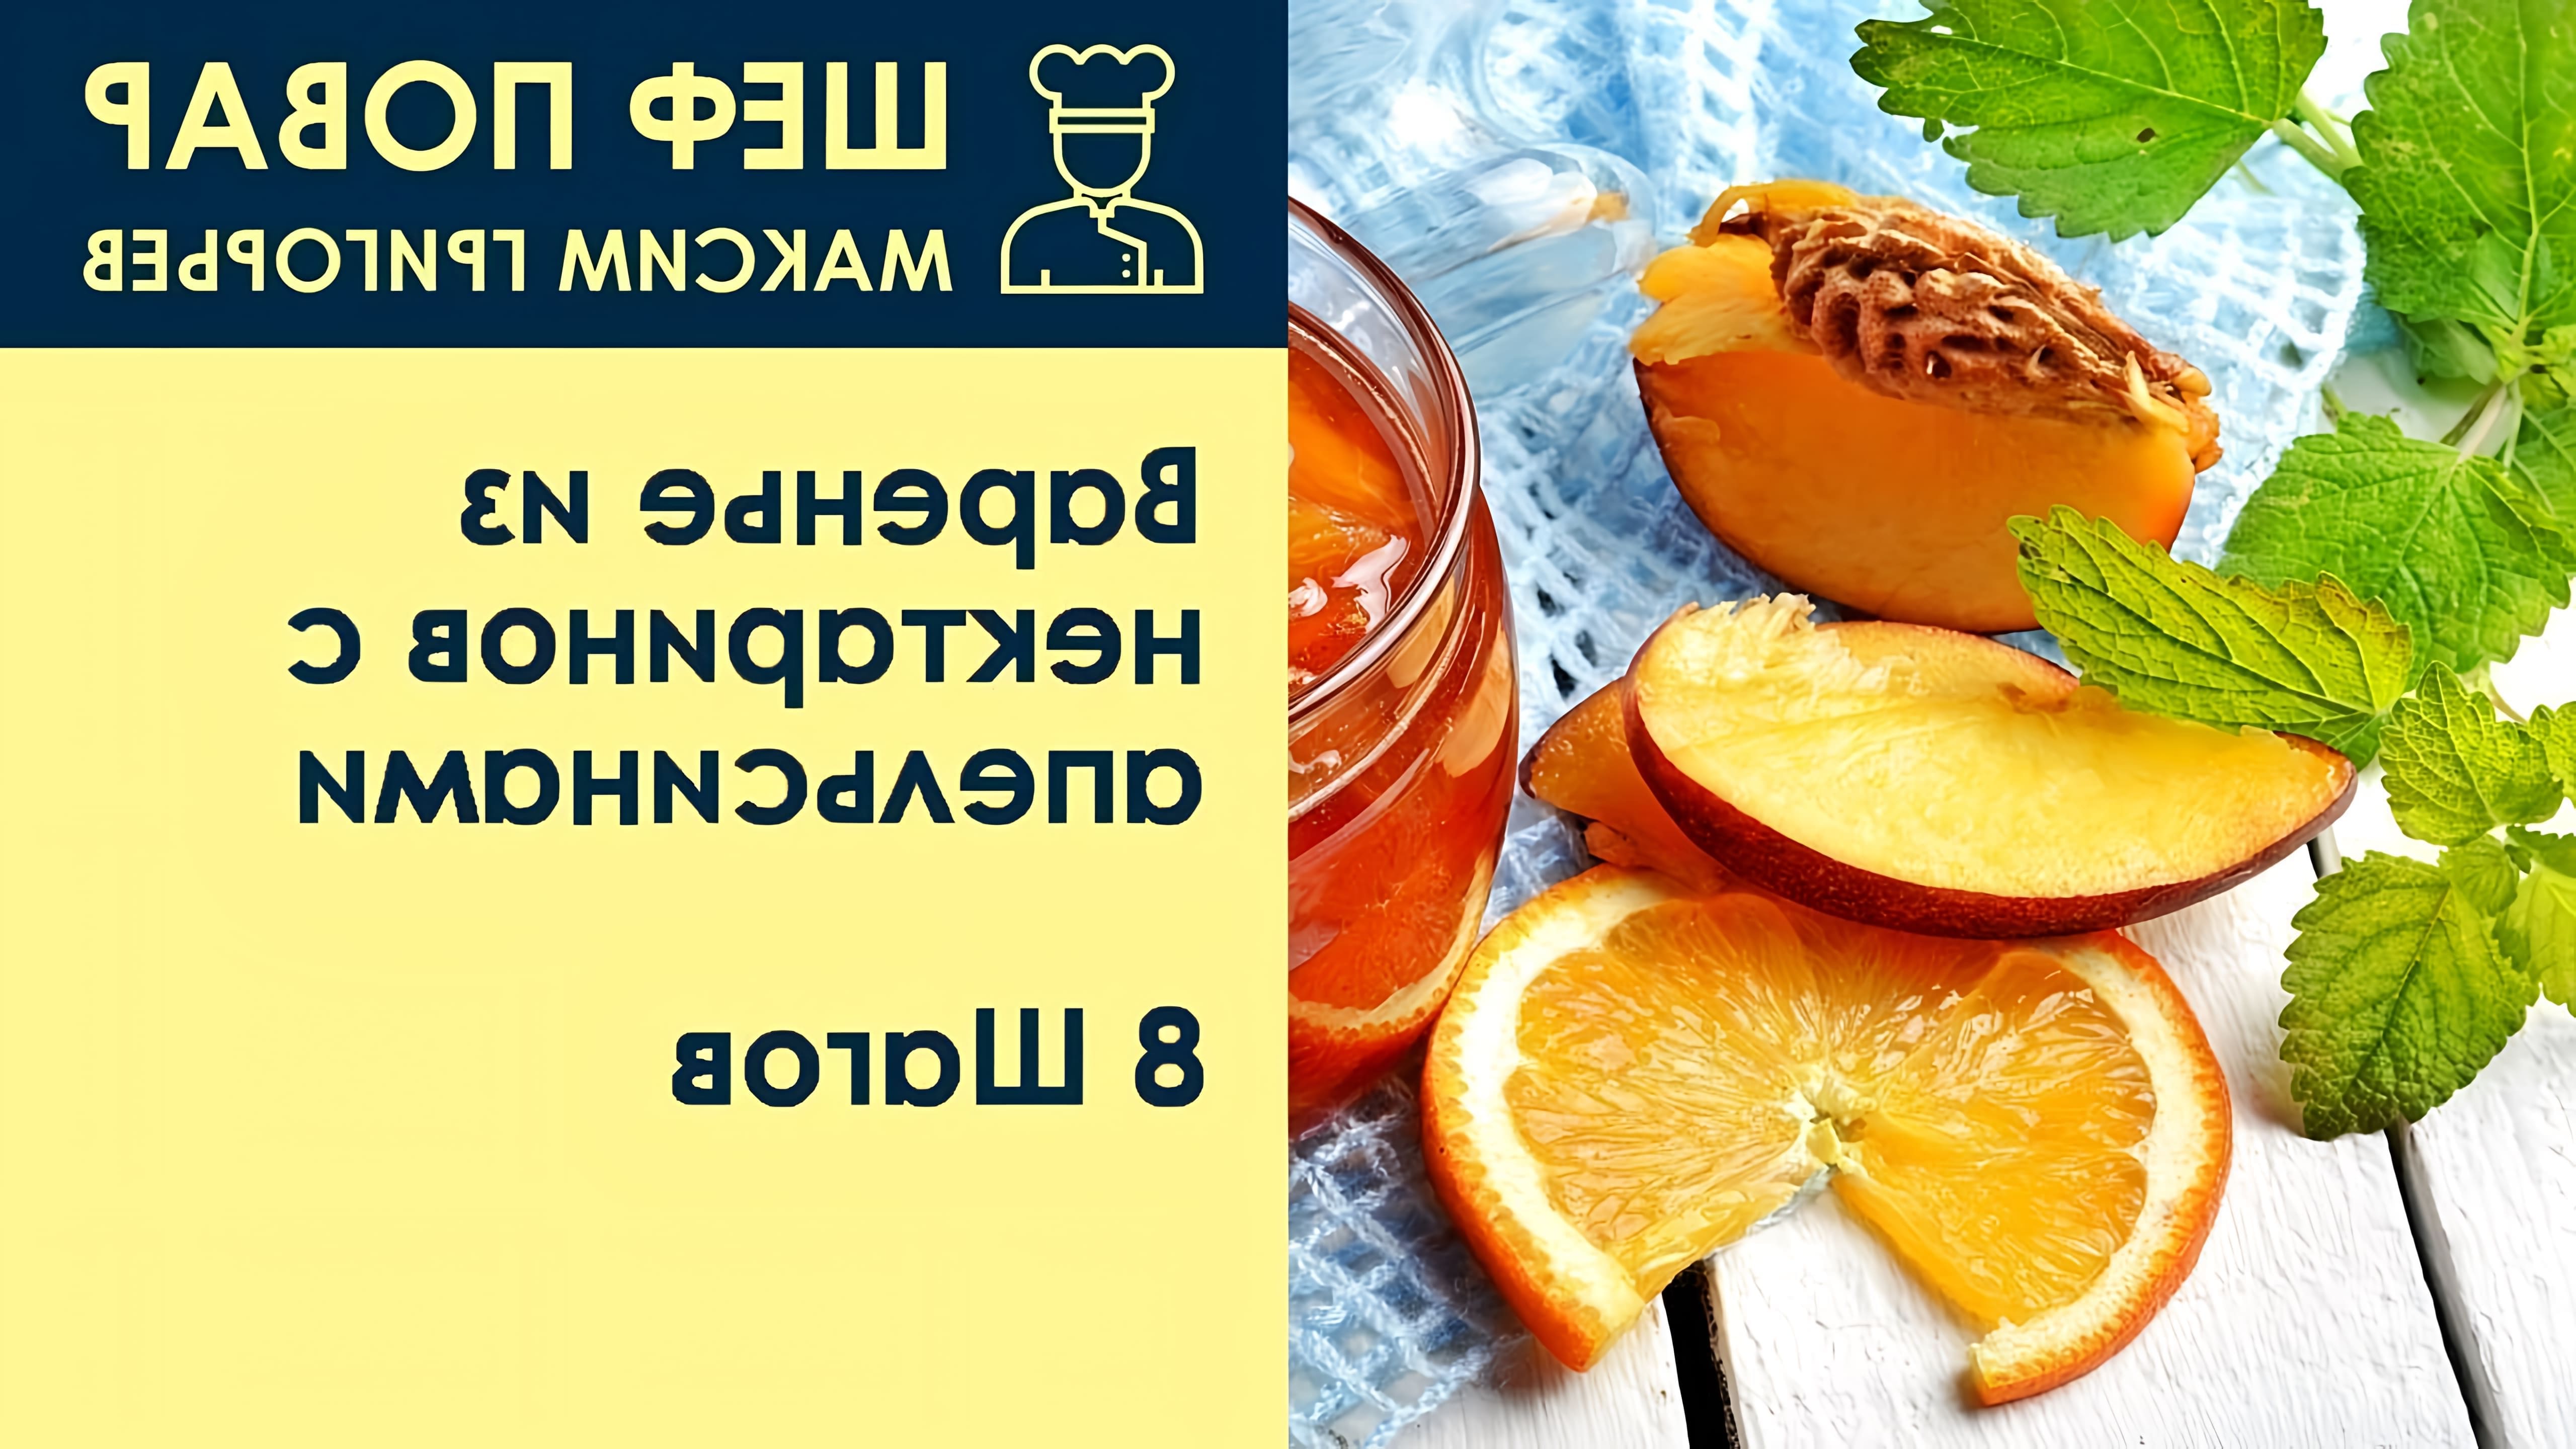 В этом видео шеф-повар Максим Григорьев показывает, как приготовить варенье из нектаринов с апельсинами